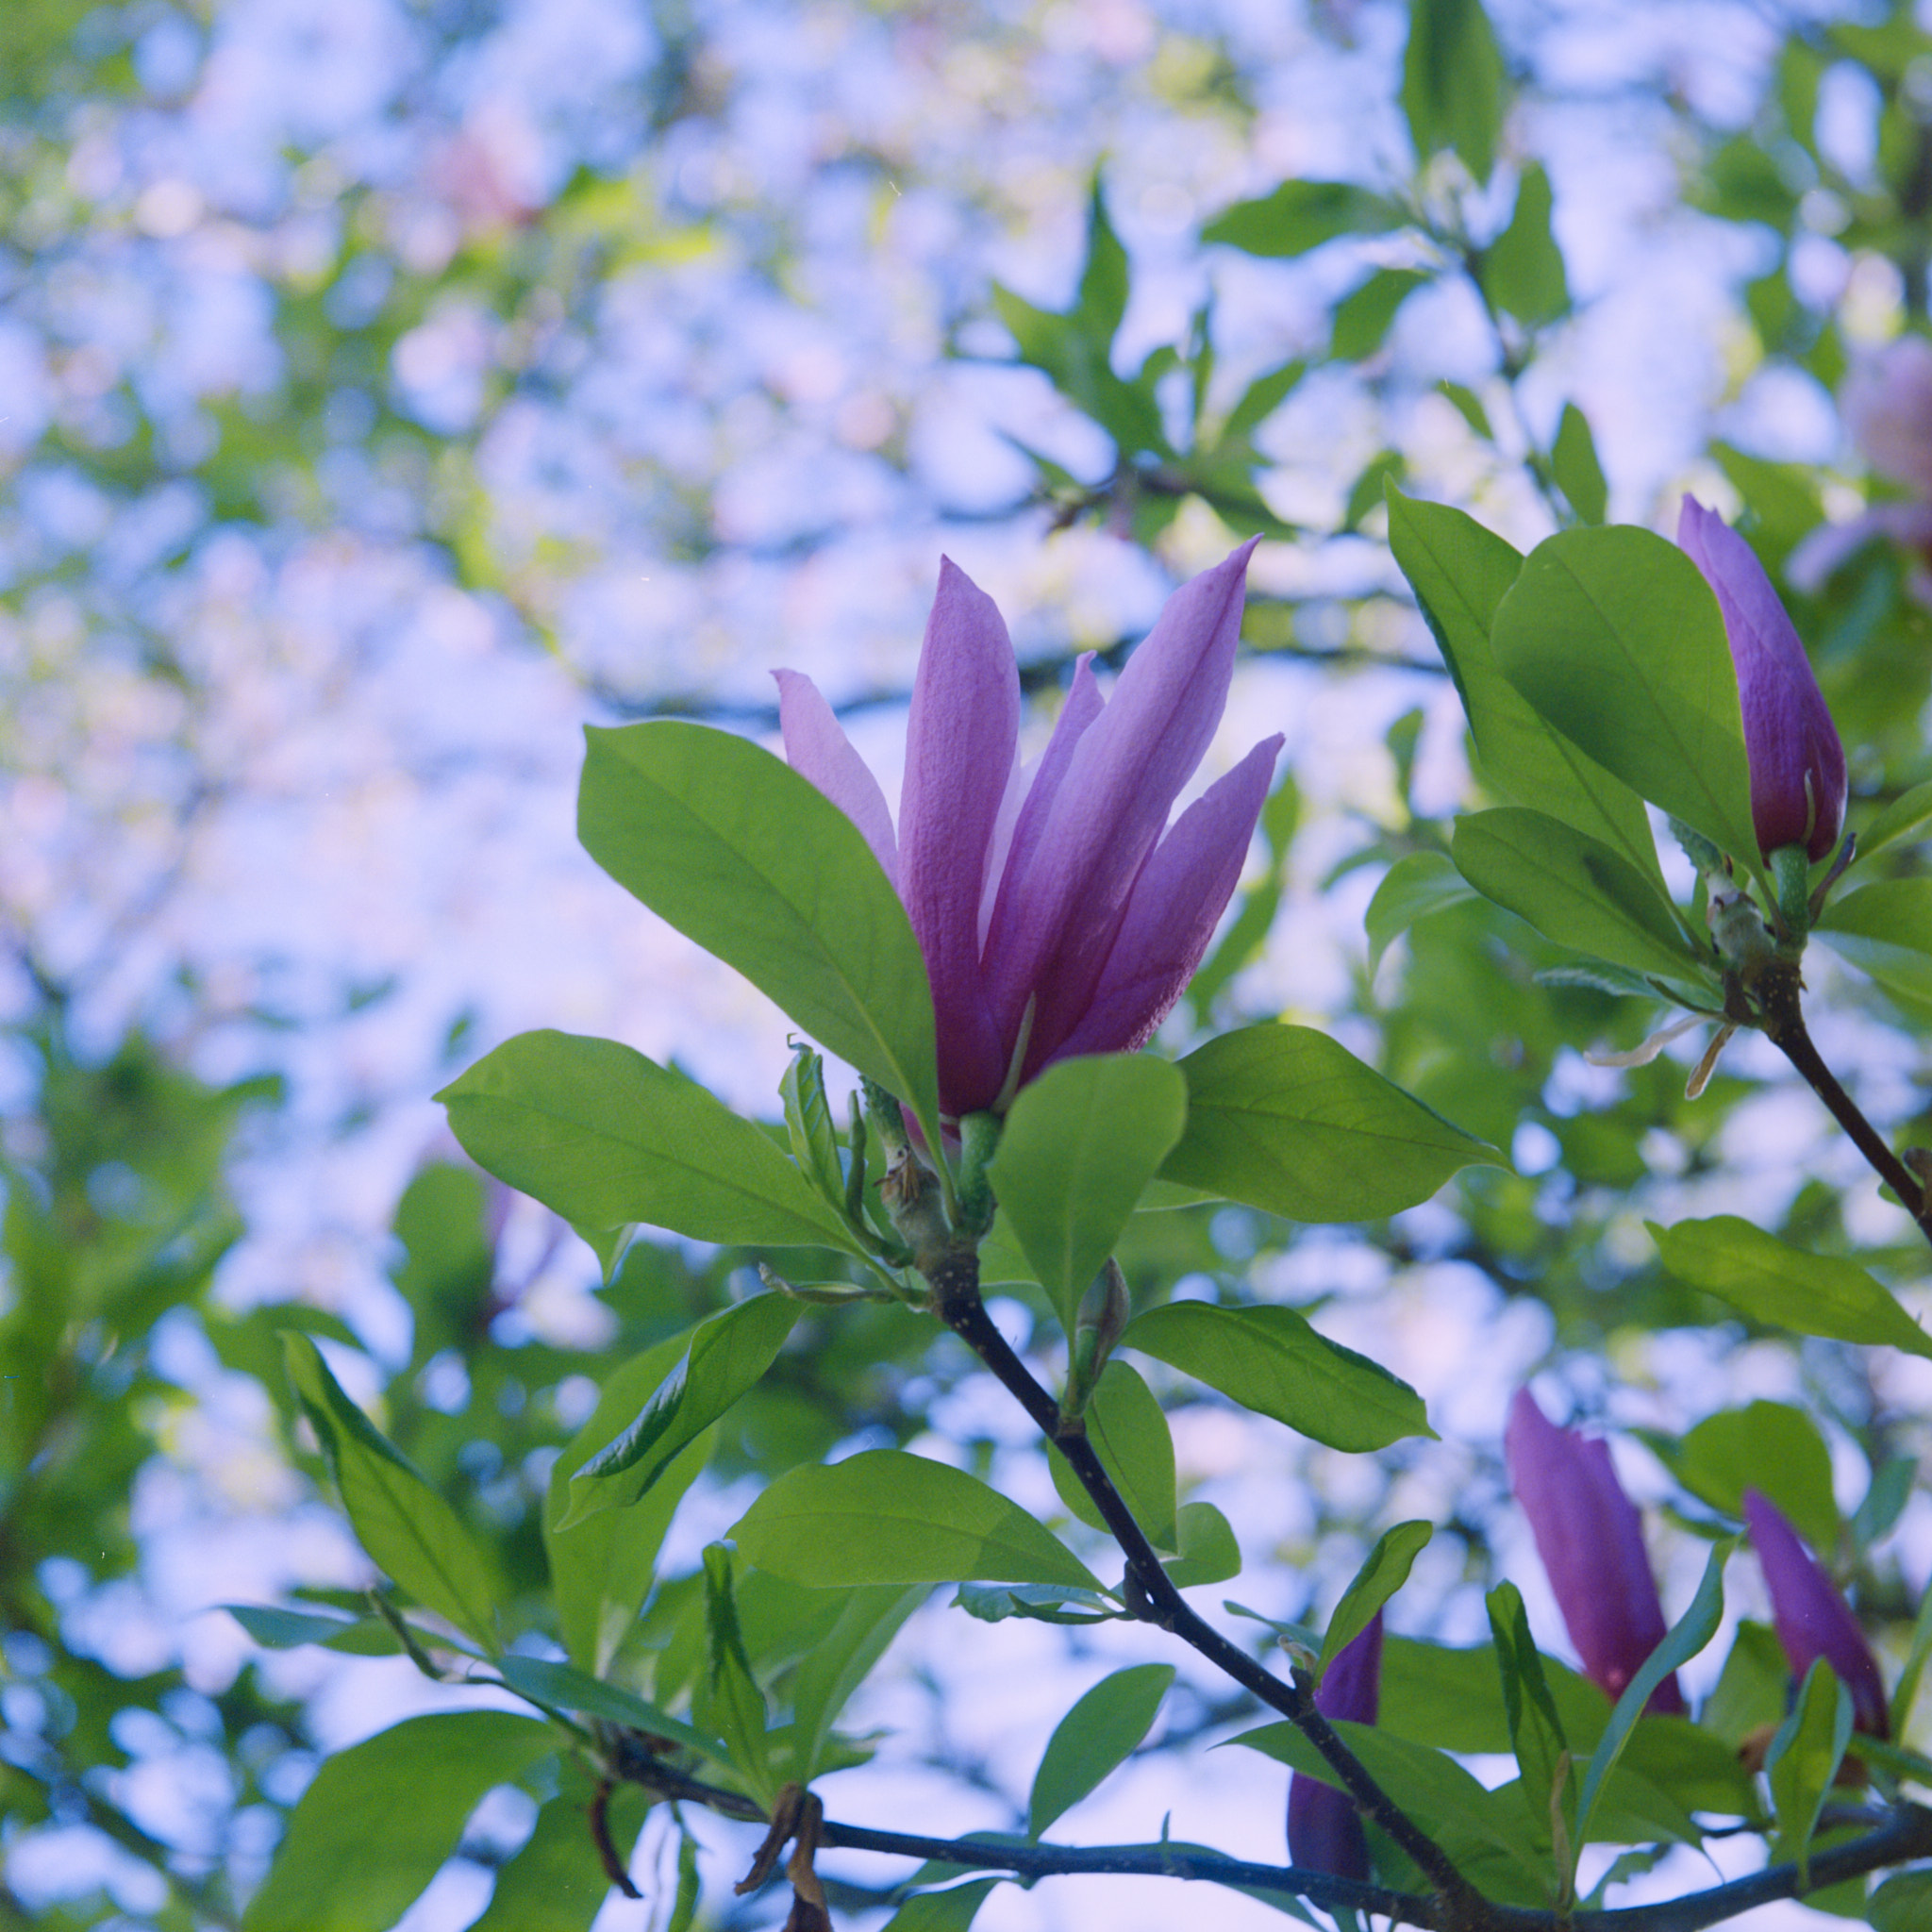 Magnolia near Prospect Park, NYC